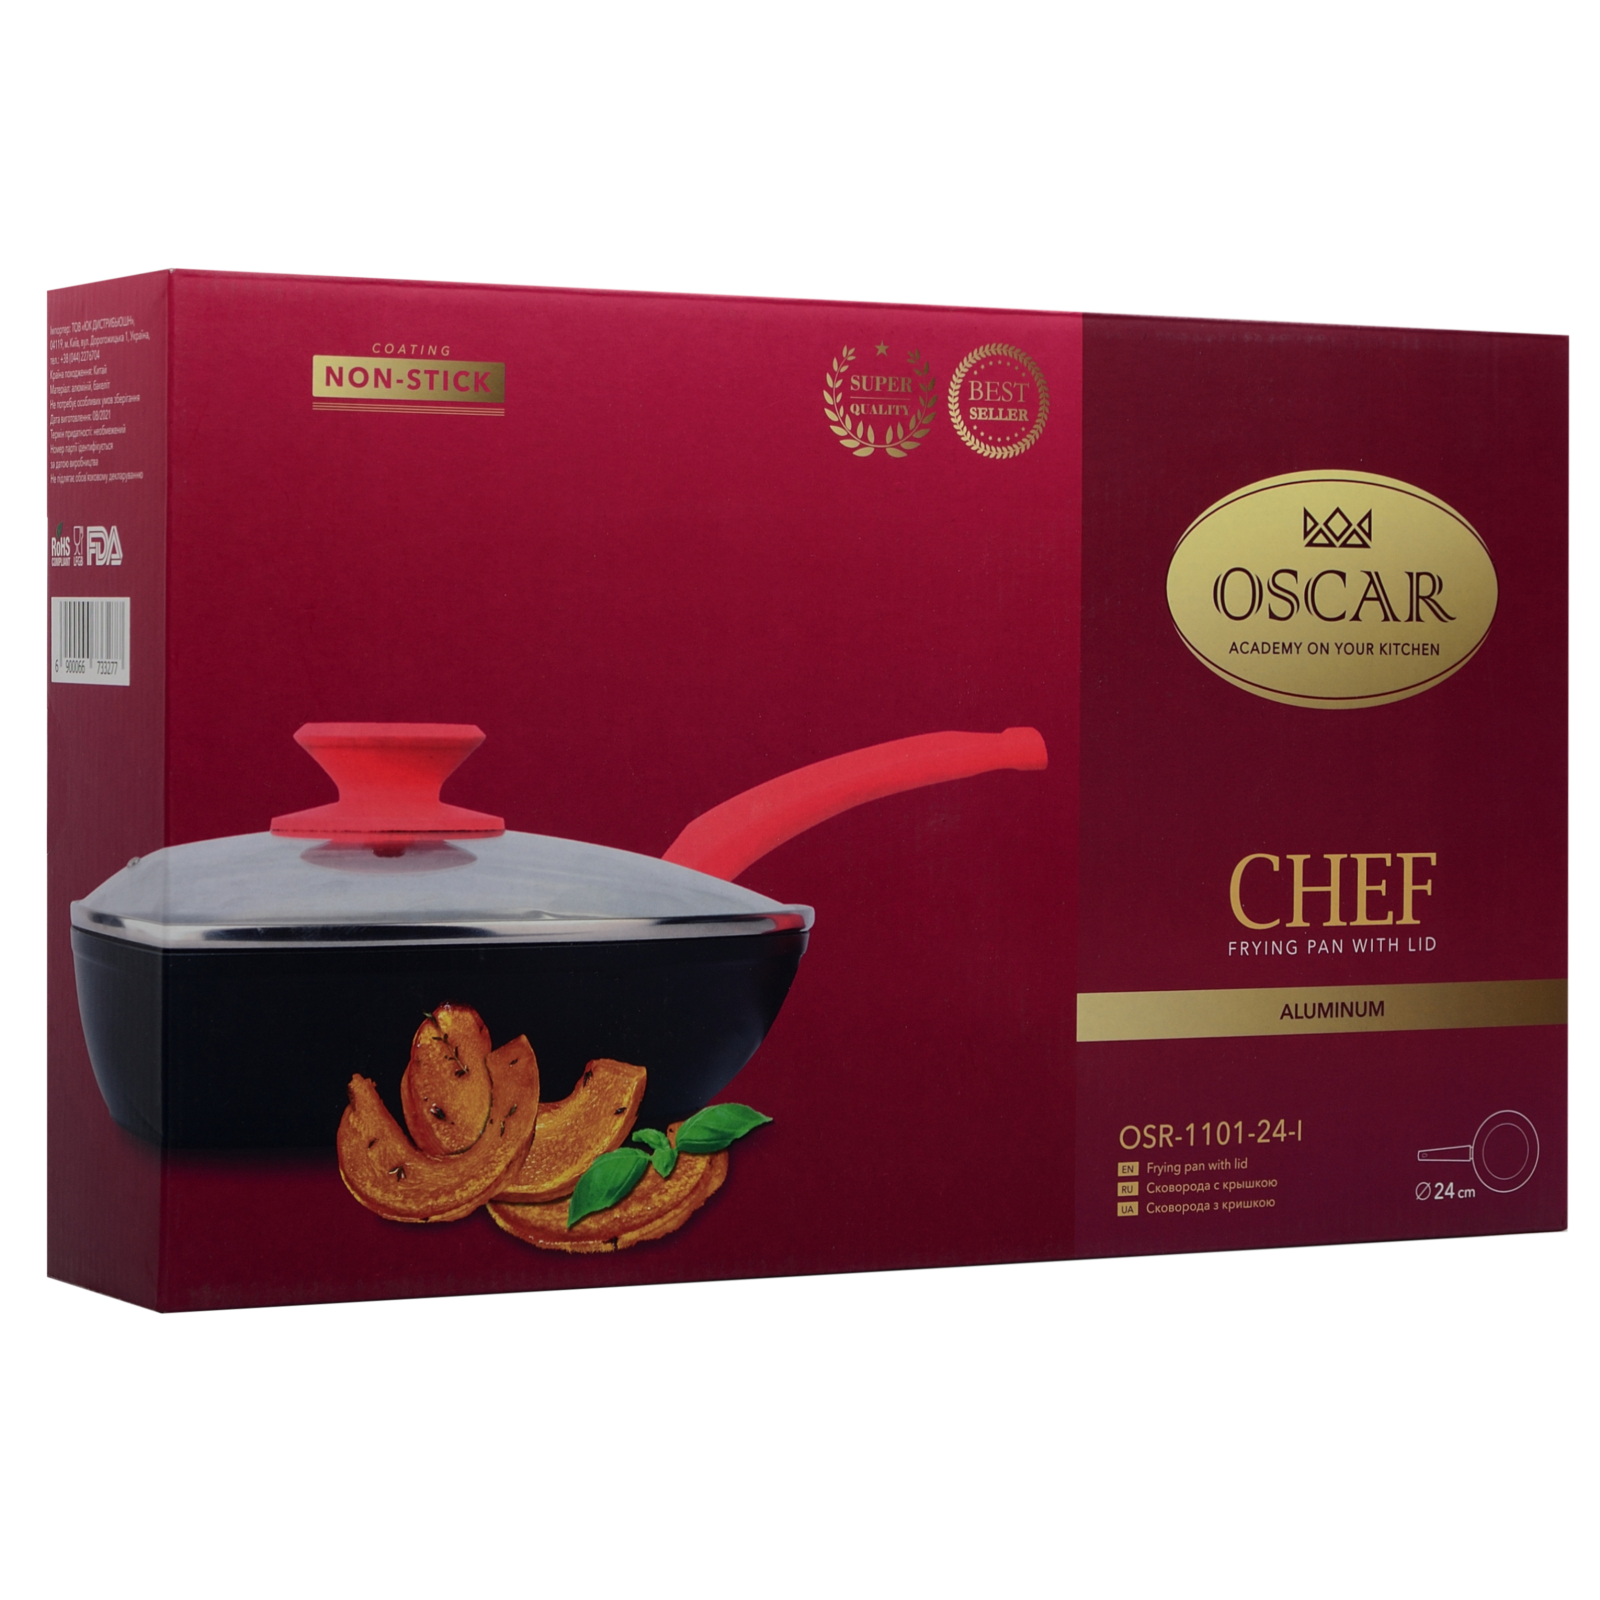 Сковорода Oscar Chef з кришкою 26 см (OSR-1101-26-l) зображення 6